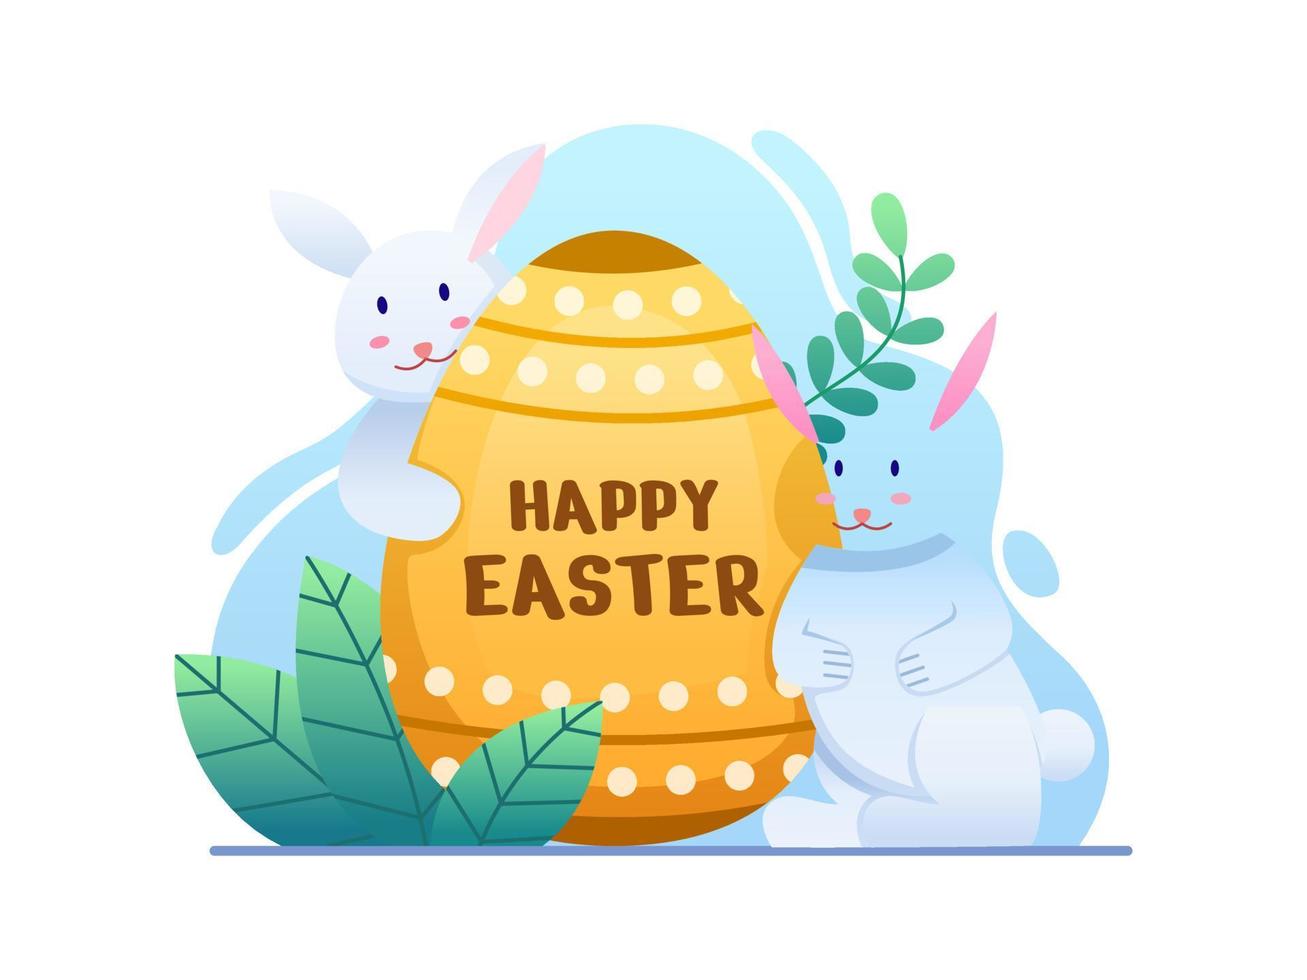 feliz ilustración de pascua con lindo conejo y huevo de pascua. lindo diseño de postal de tarjeta de felicitación de Pascua. se puede utilizar para web, libro, invitación, tarjeta de felicitación, postal, animación, etc. vector